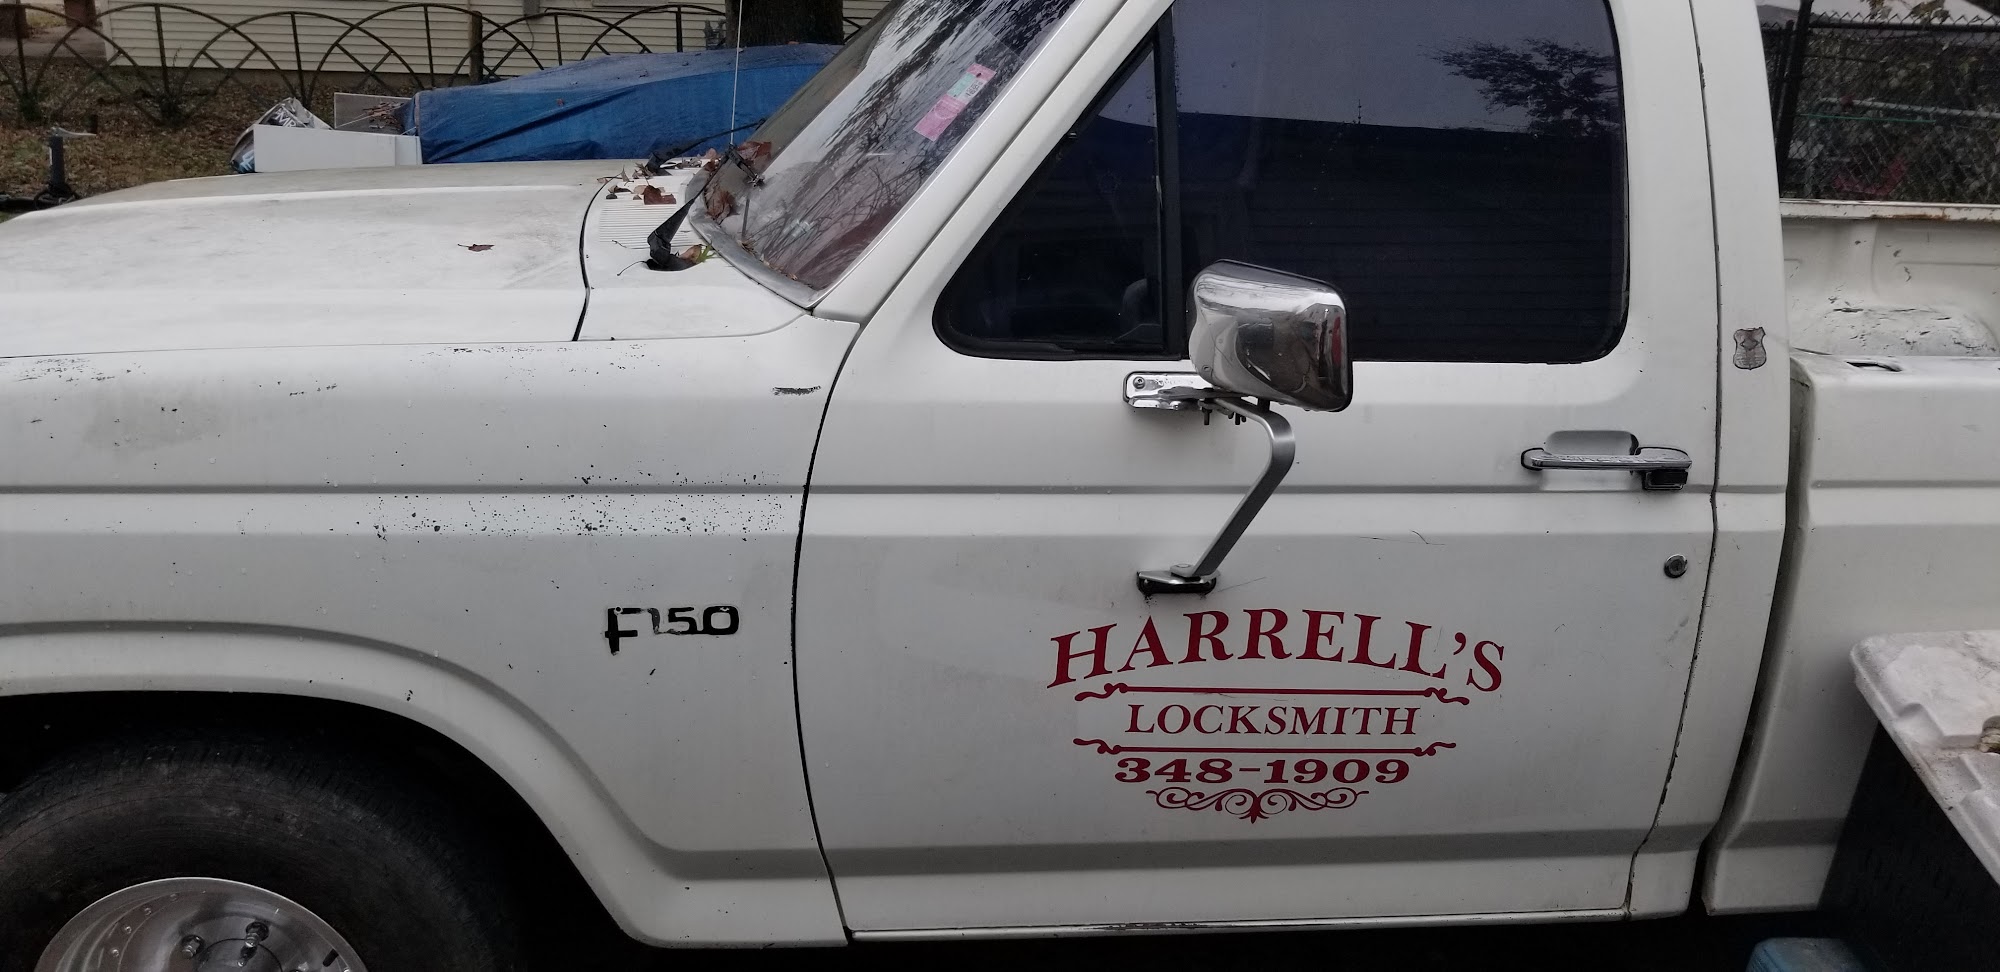 Harrell's Locksmith